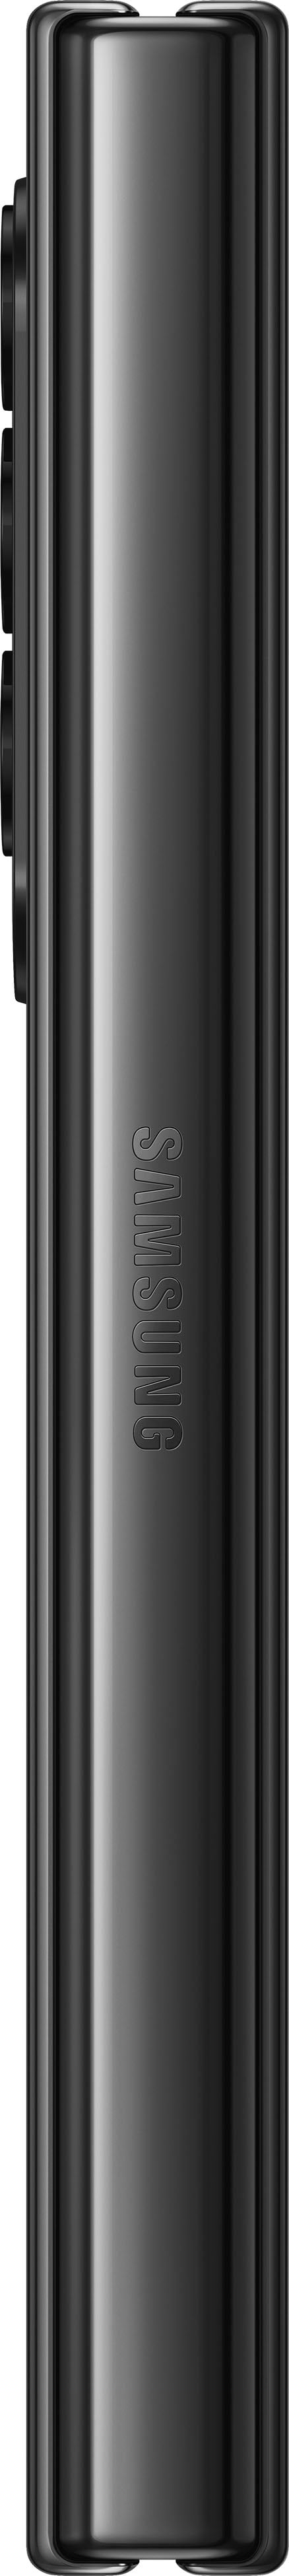 Samsung - Galaxy Z Fold4 512GB - Phantom Black (Verizon)_2